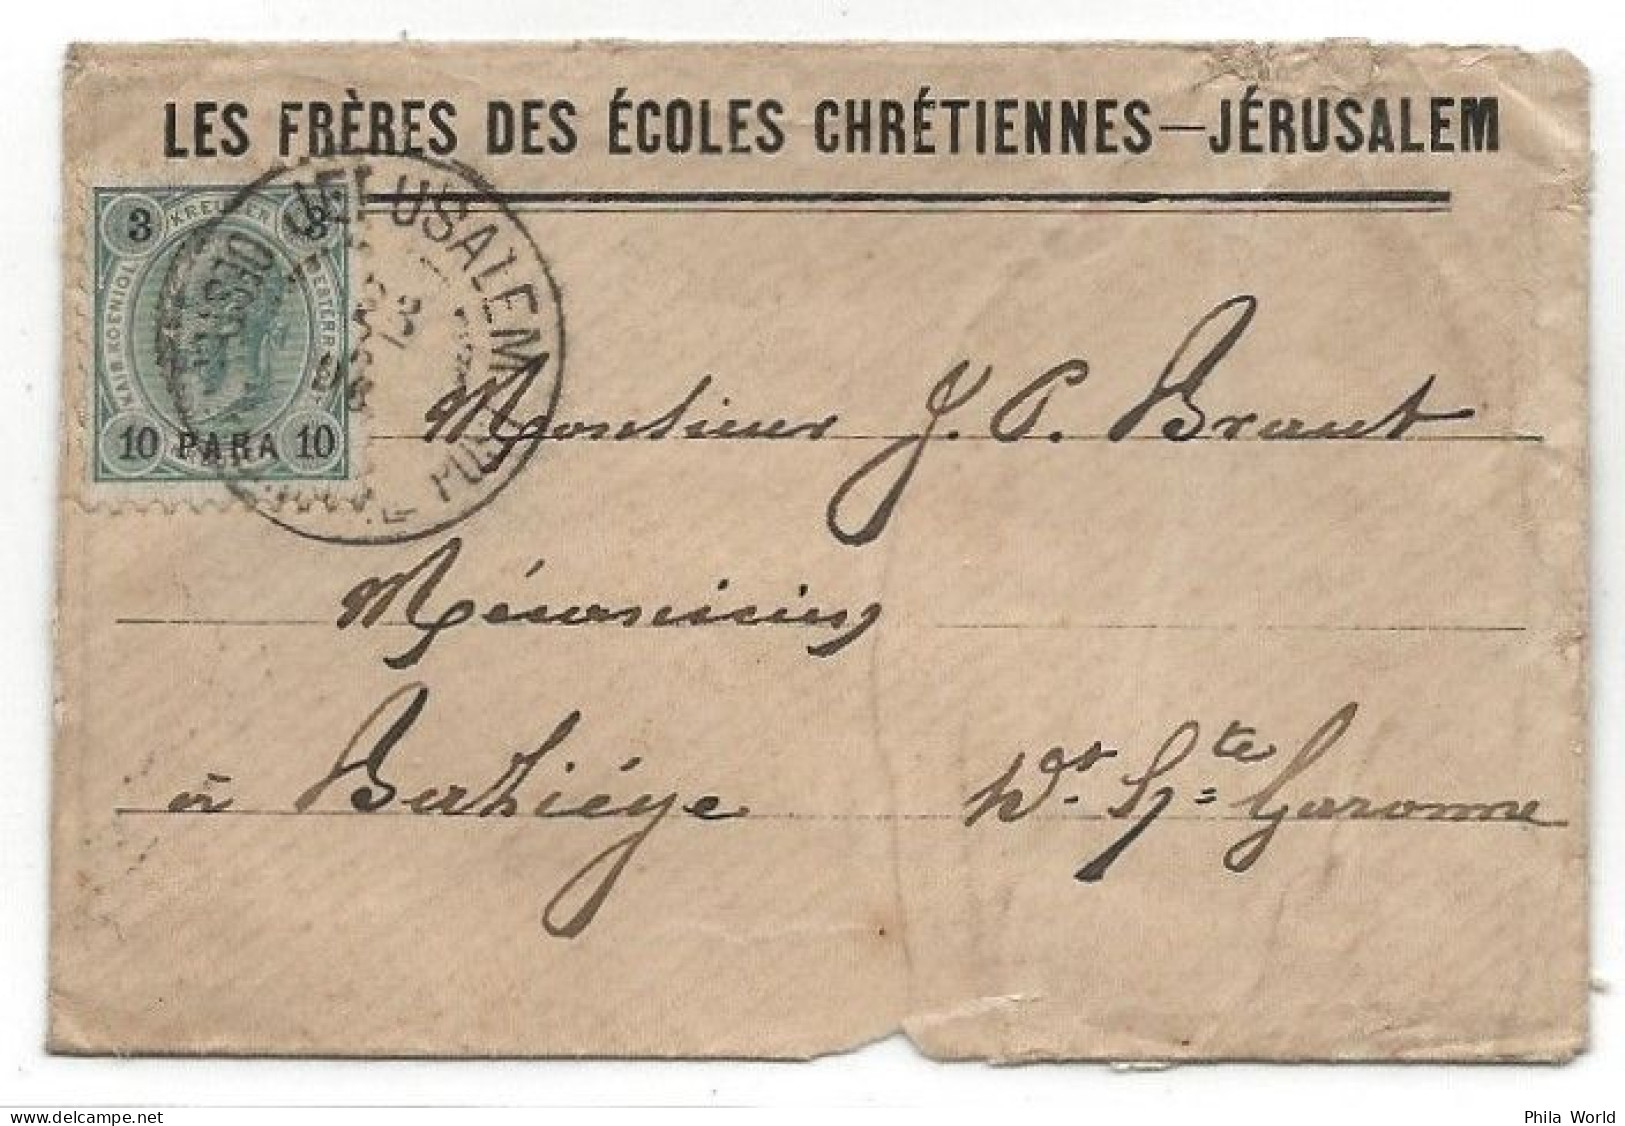 JERUSALEM 1896 Lettre Cover En-tête FRERES ECOLES CHRETIENNES Pour FRANCE Haute-Garonne Via LYON GARE RHONE - Sonstige - Asien